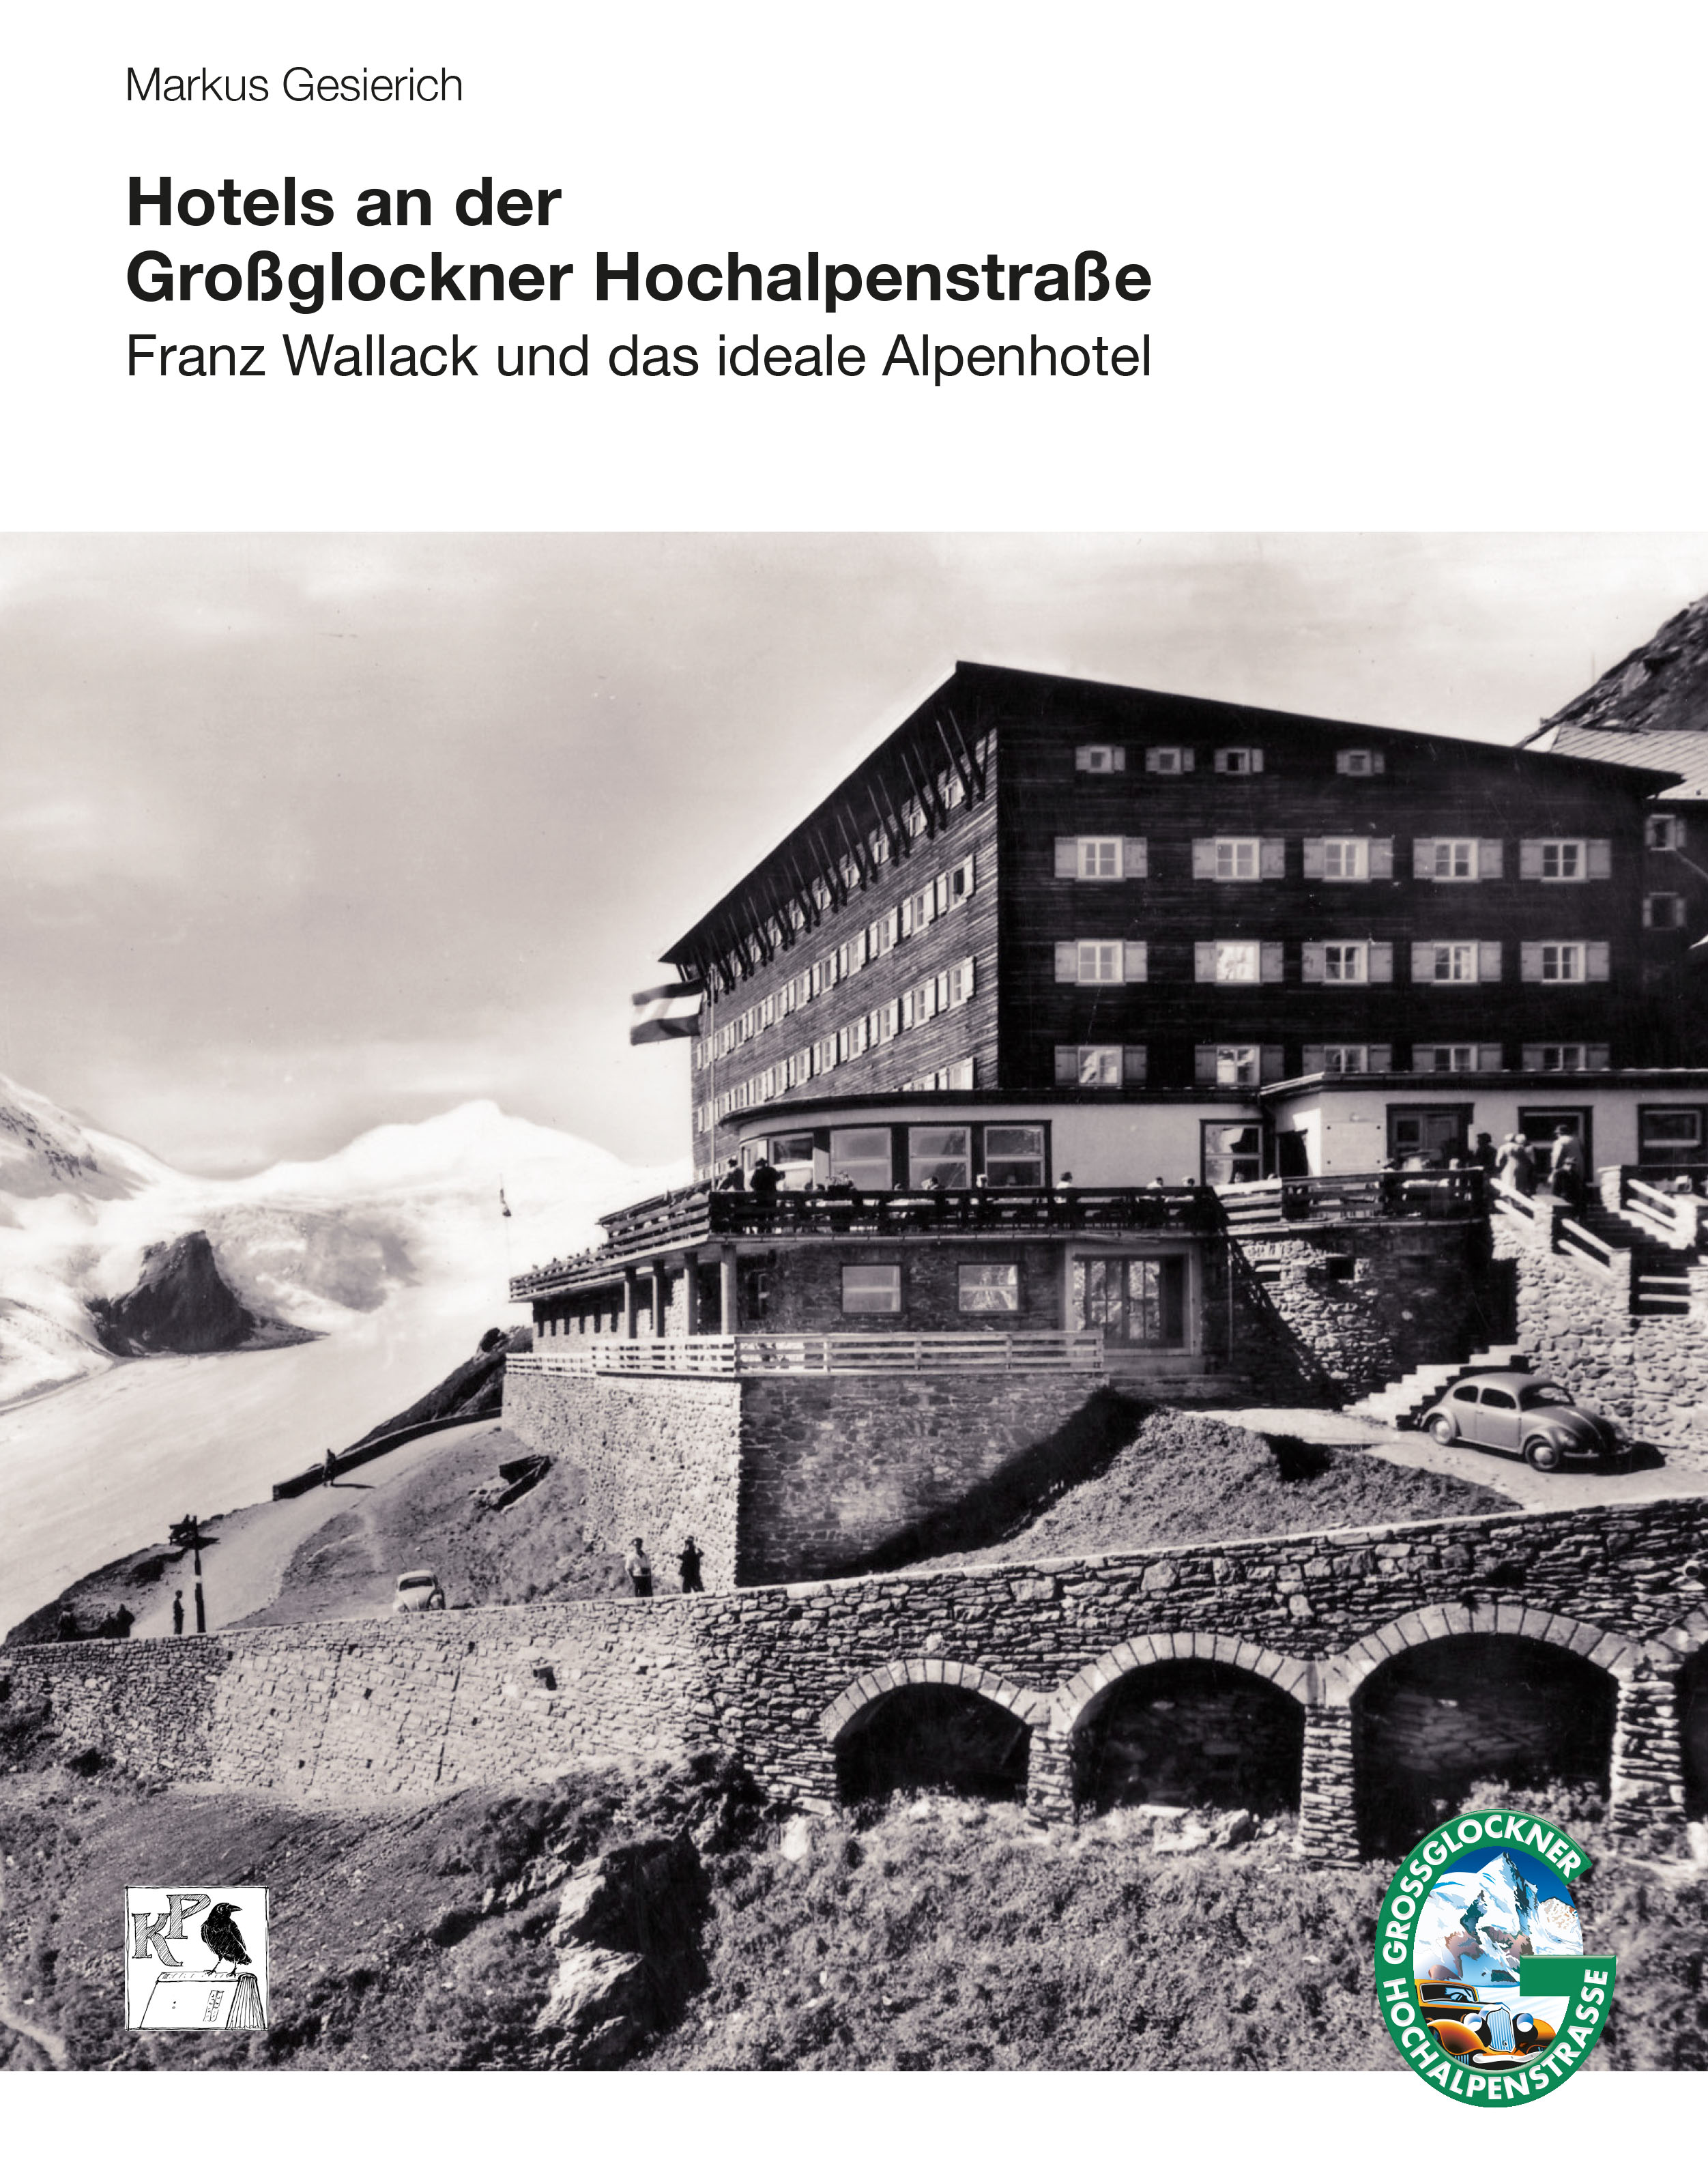 Hotels an der Großglockner Hochalpenstraße — Franz Wallack und das ideale Alpenhotel